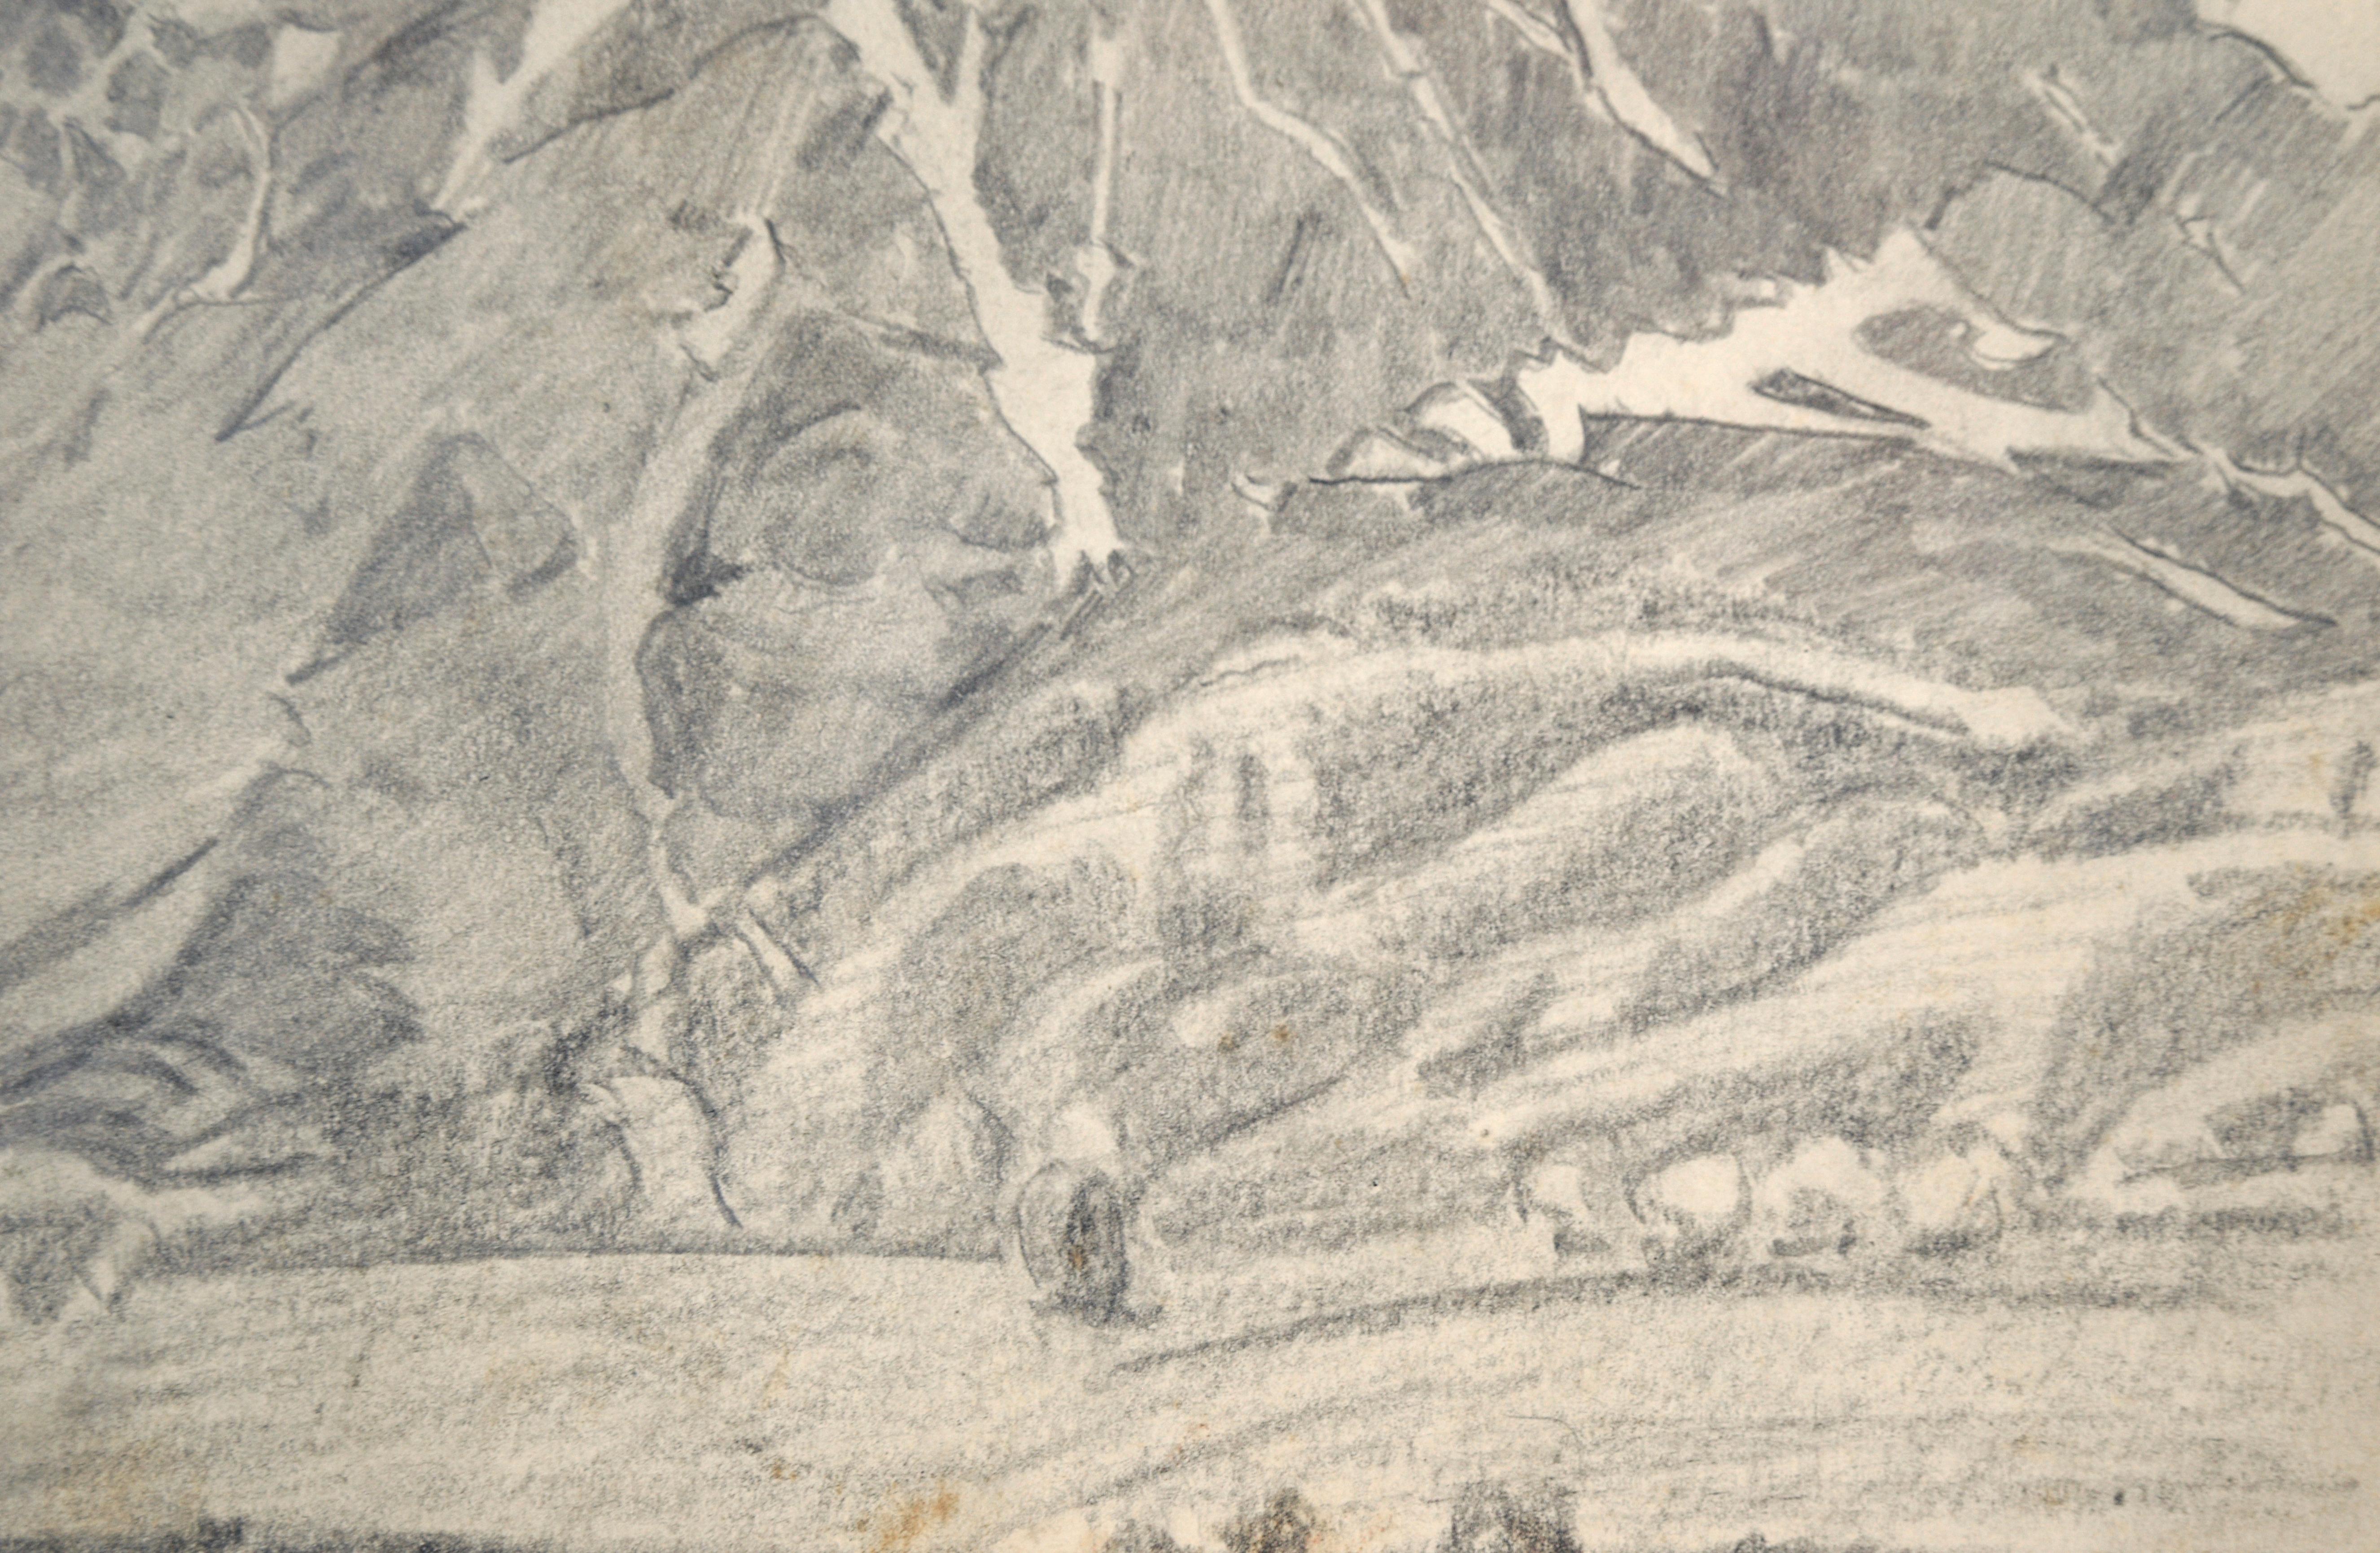 San Gabriel Mountain Landscape in Black and White - Graphitstift auf Papier
Detaillierte Berglandschaft von Ralph Holmes (Amerikaner, 1876-1963). 

Signiert unten rechts in der Ecke 